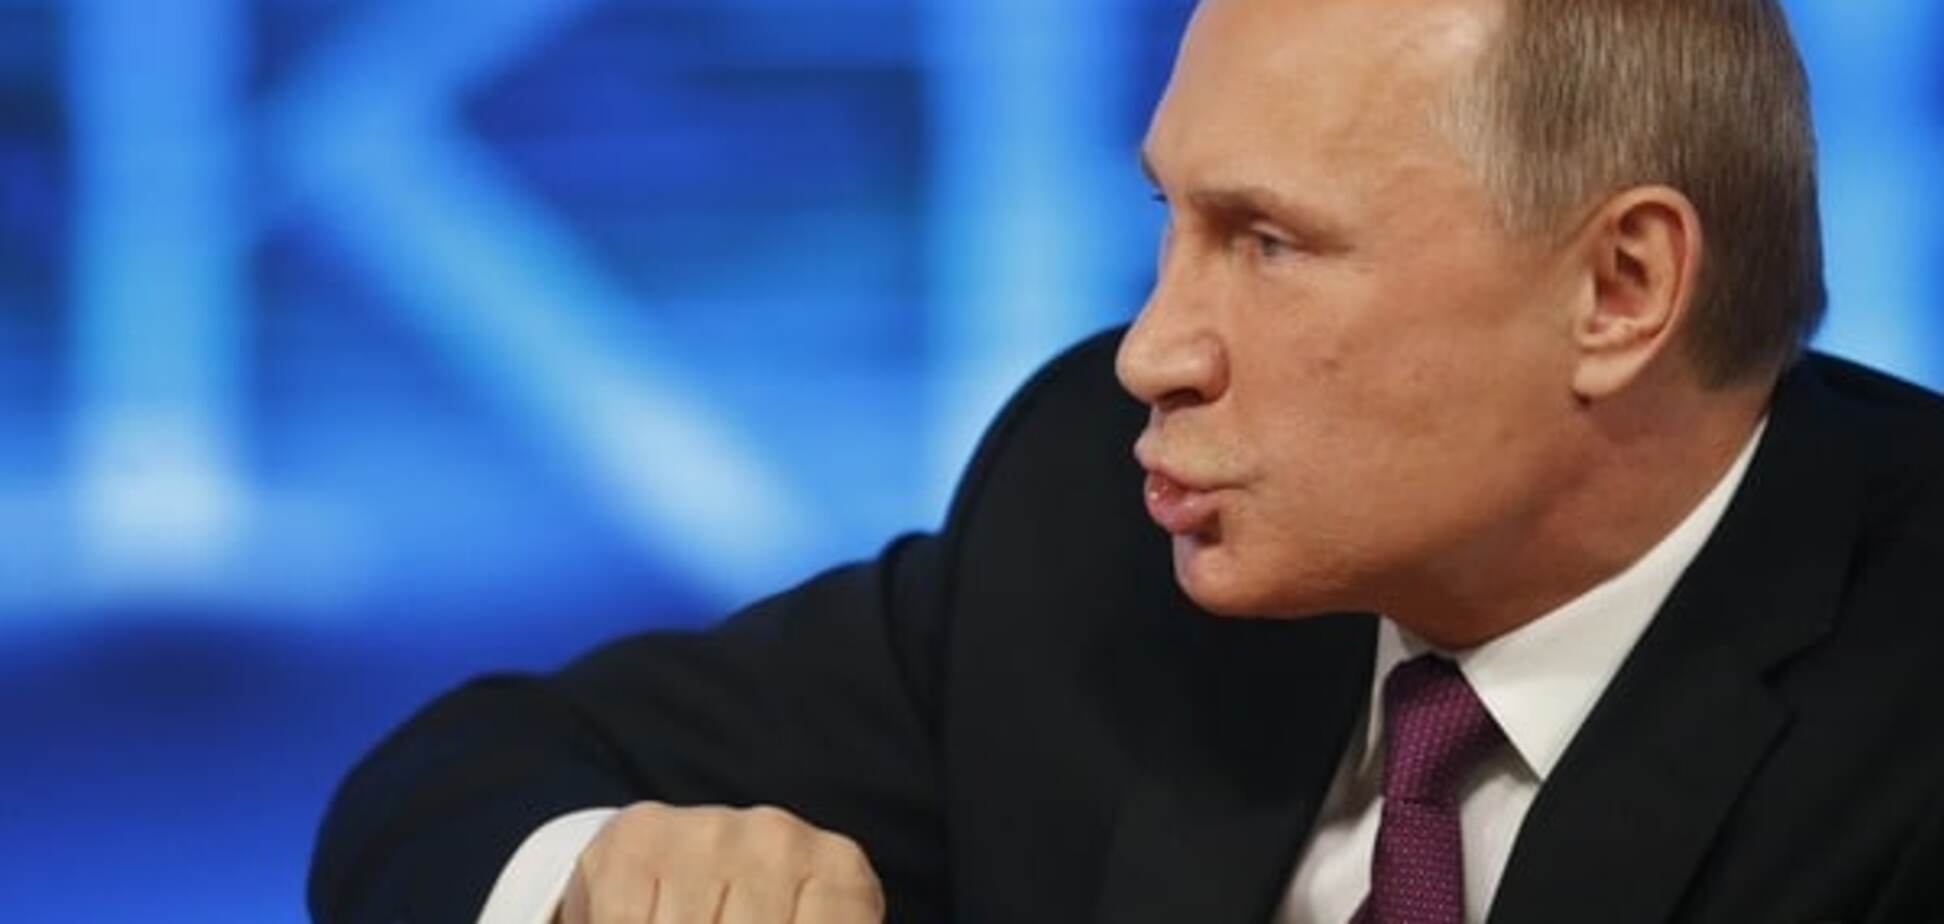 Путин шипел на силовиков, узнав об убийстве Немцова - журналист